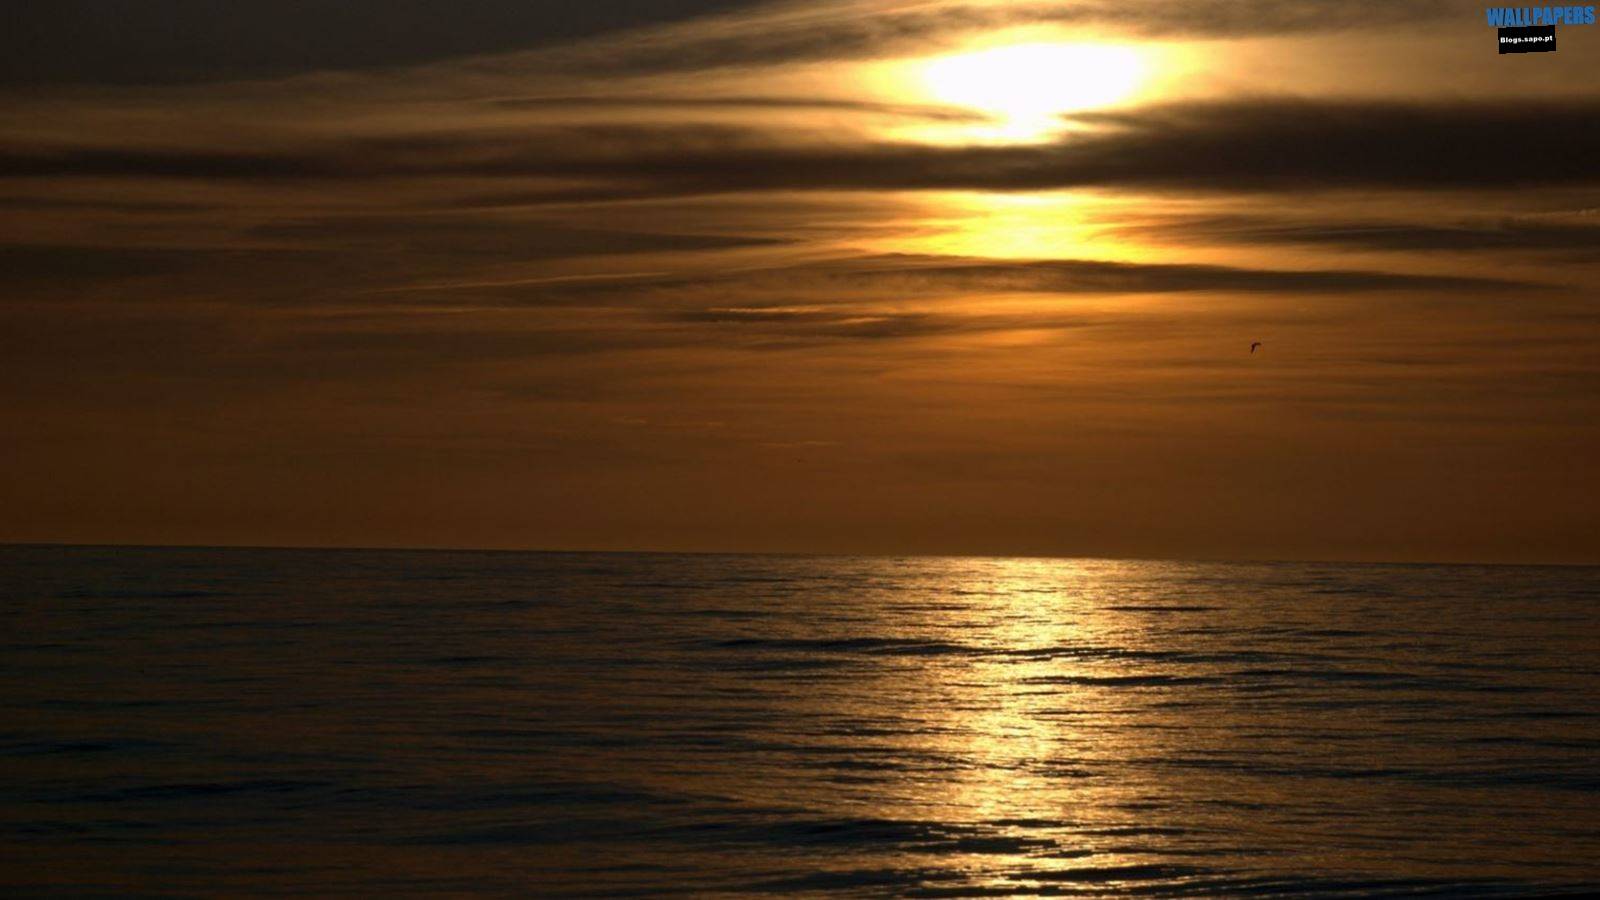 Dark sunset beach wallpaper 1600215900 Wallpaper 29 HD for